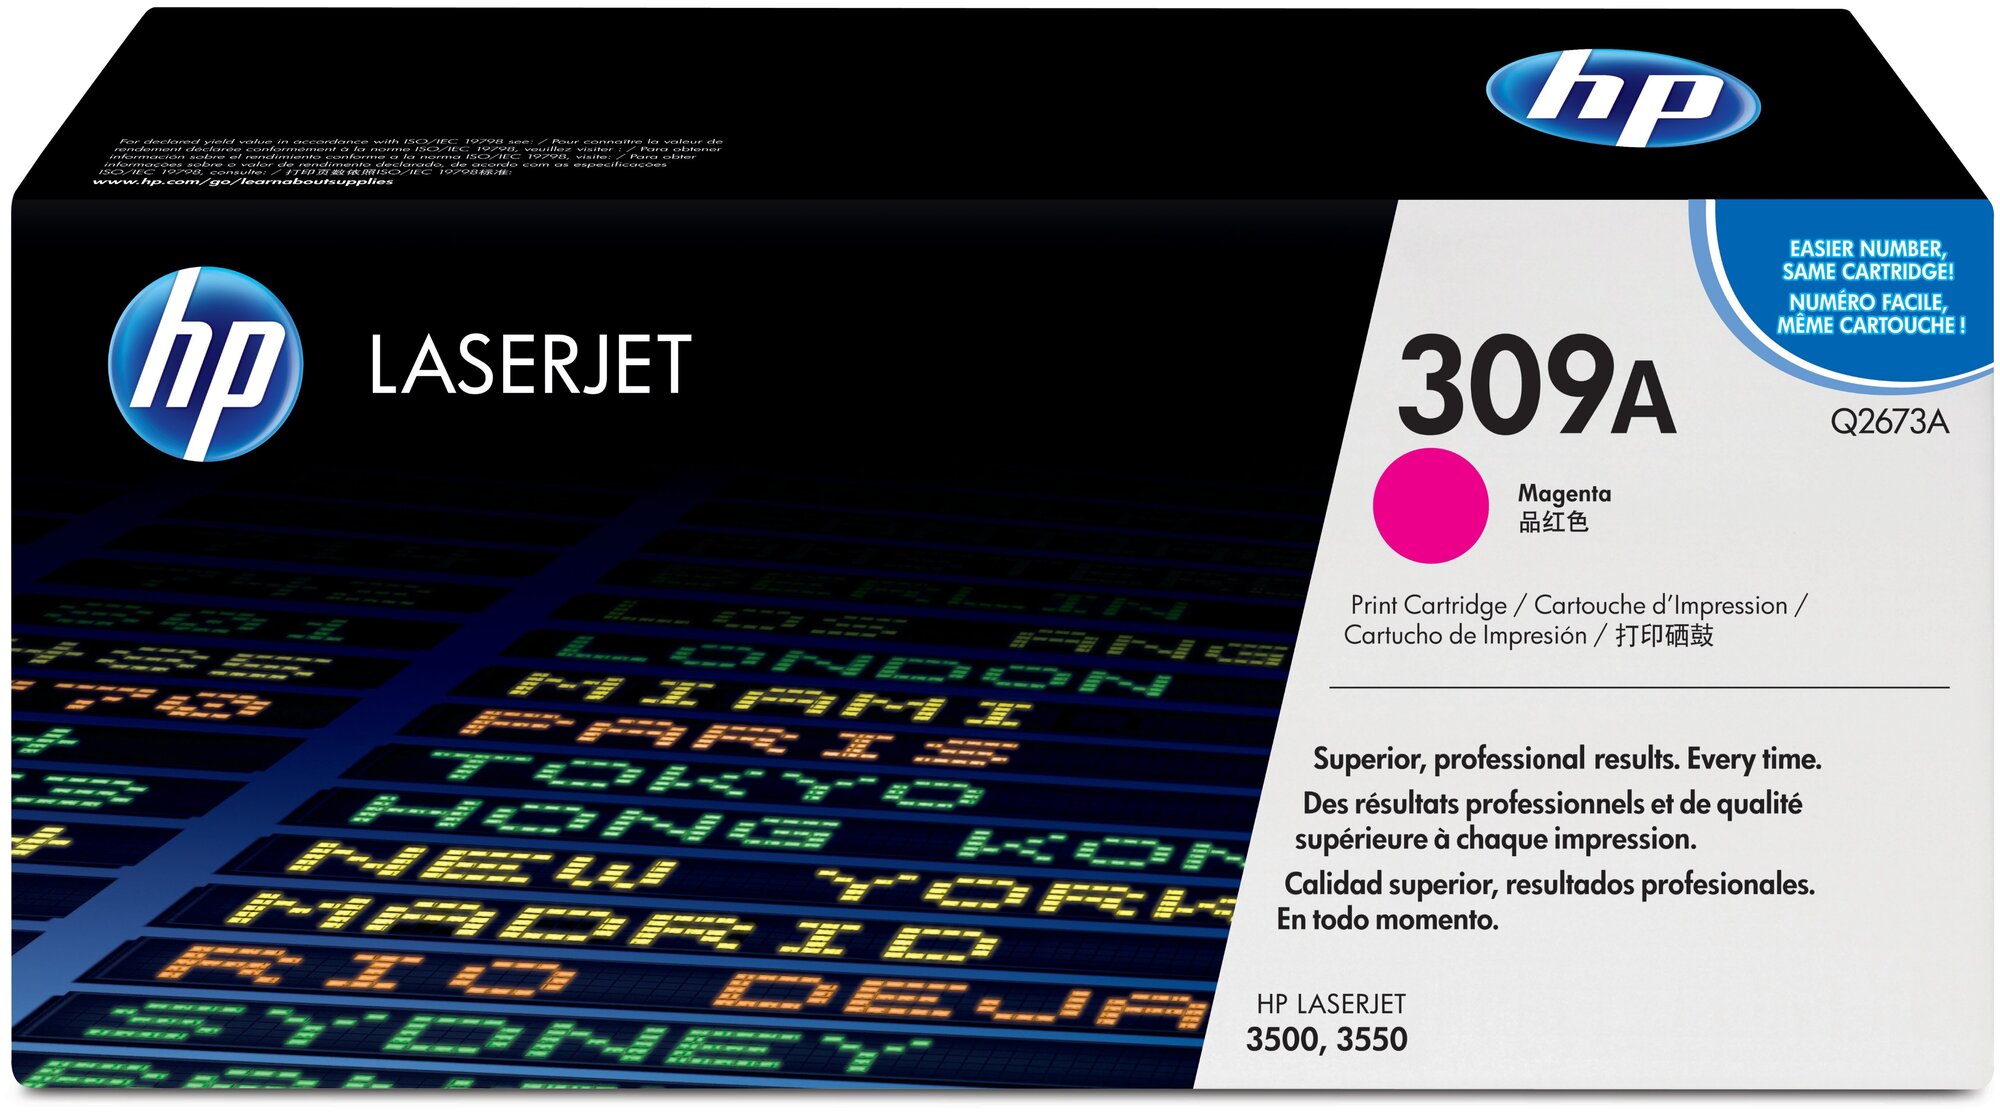 Лазерный картридж Hewlett Packard Q2673A (309A) Magenta